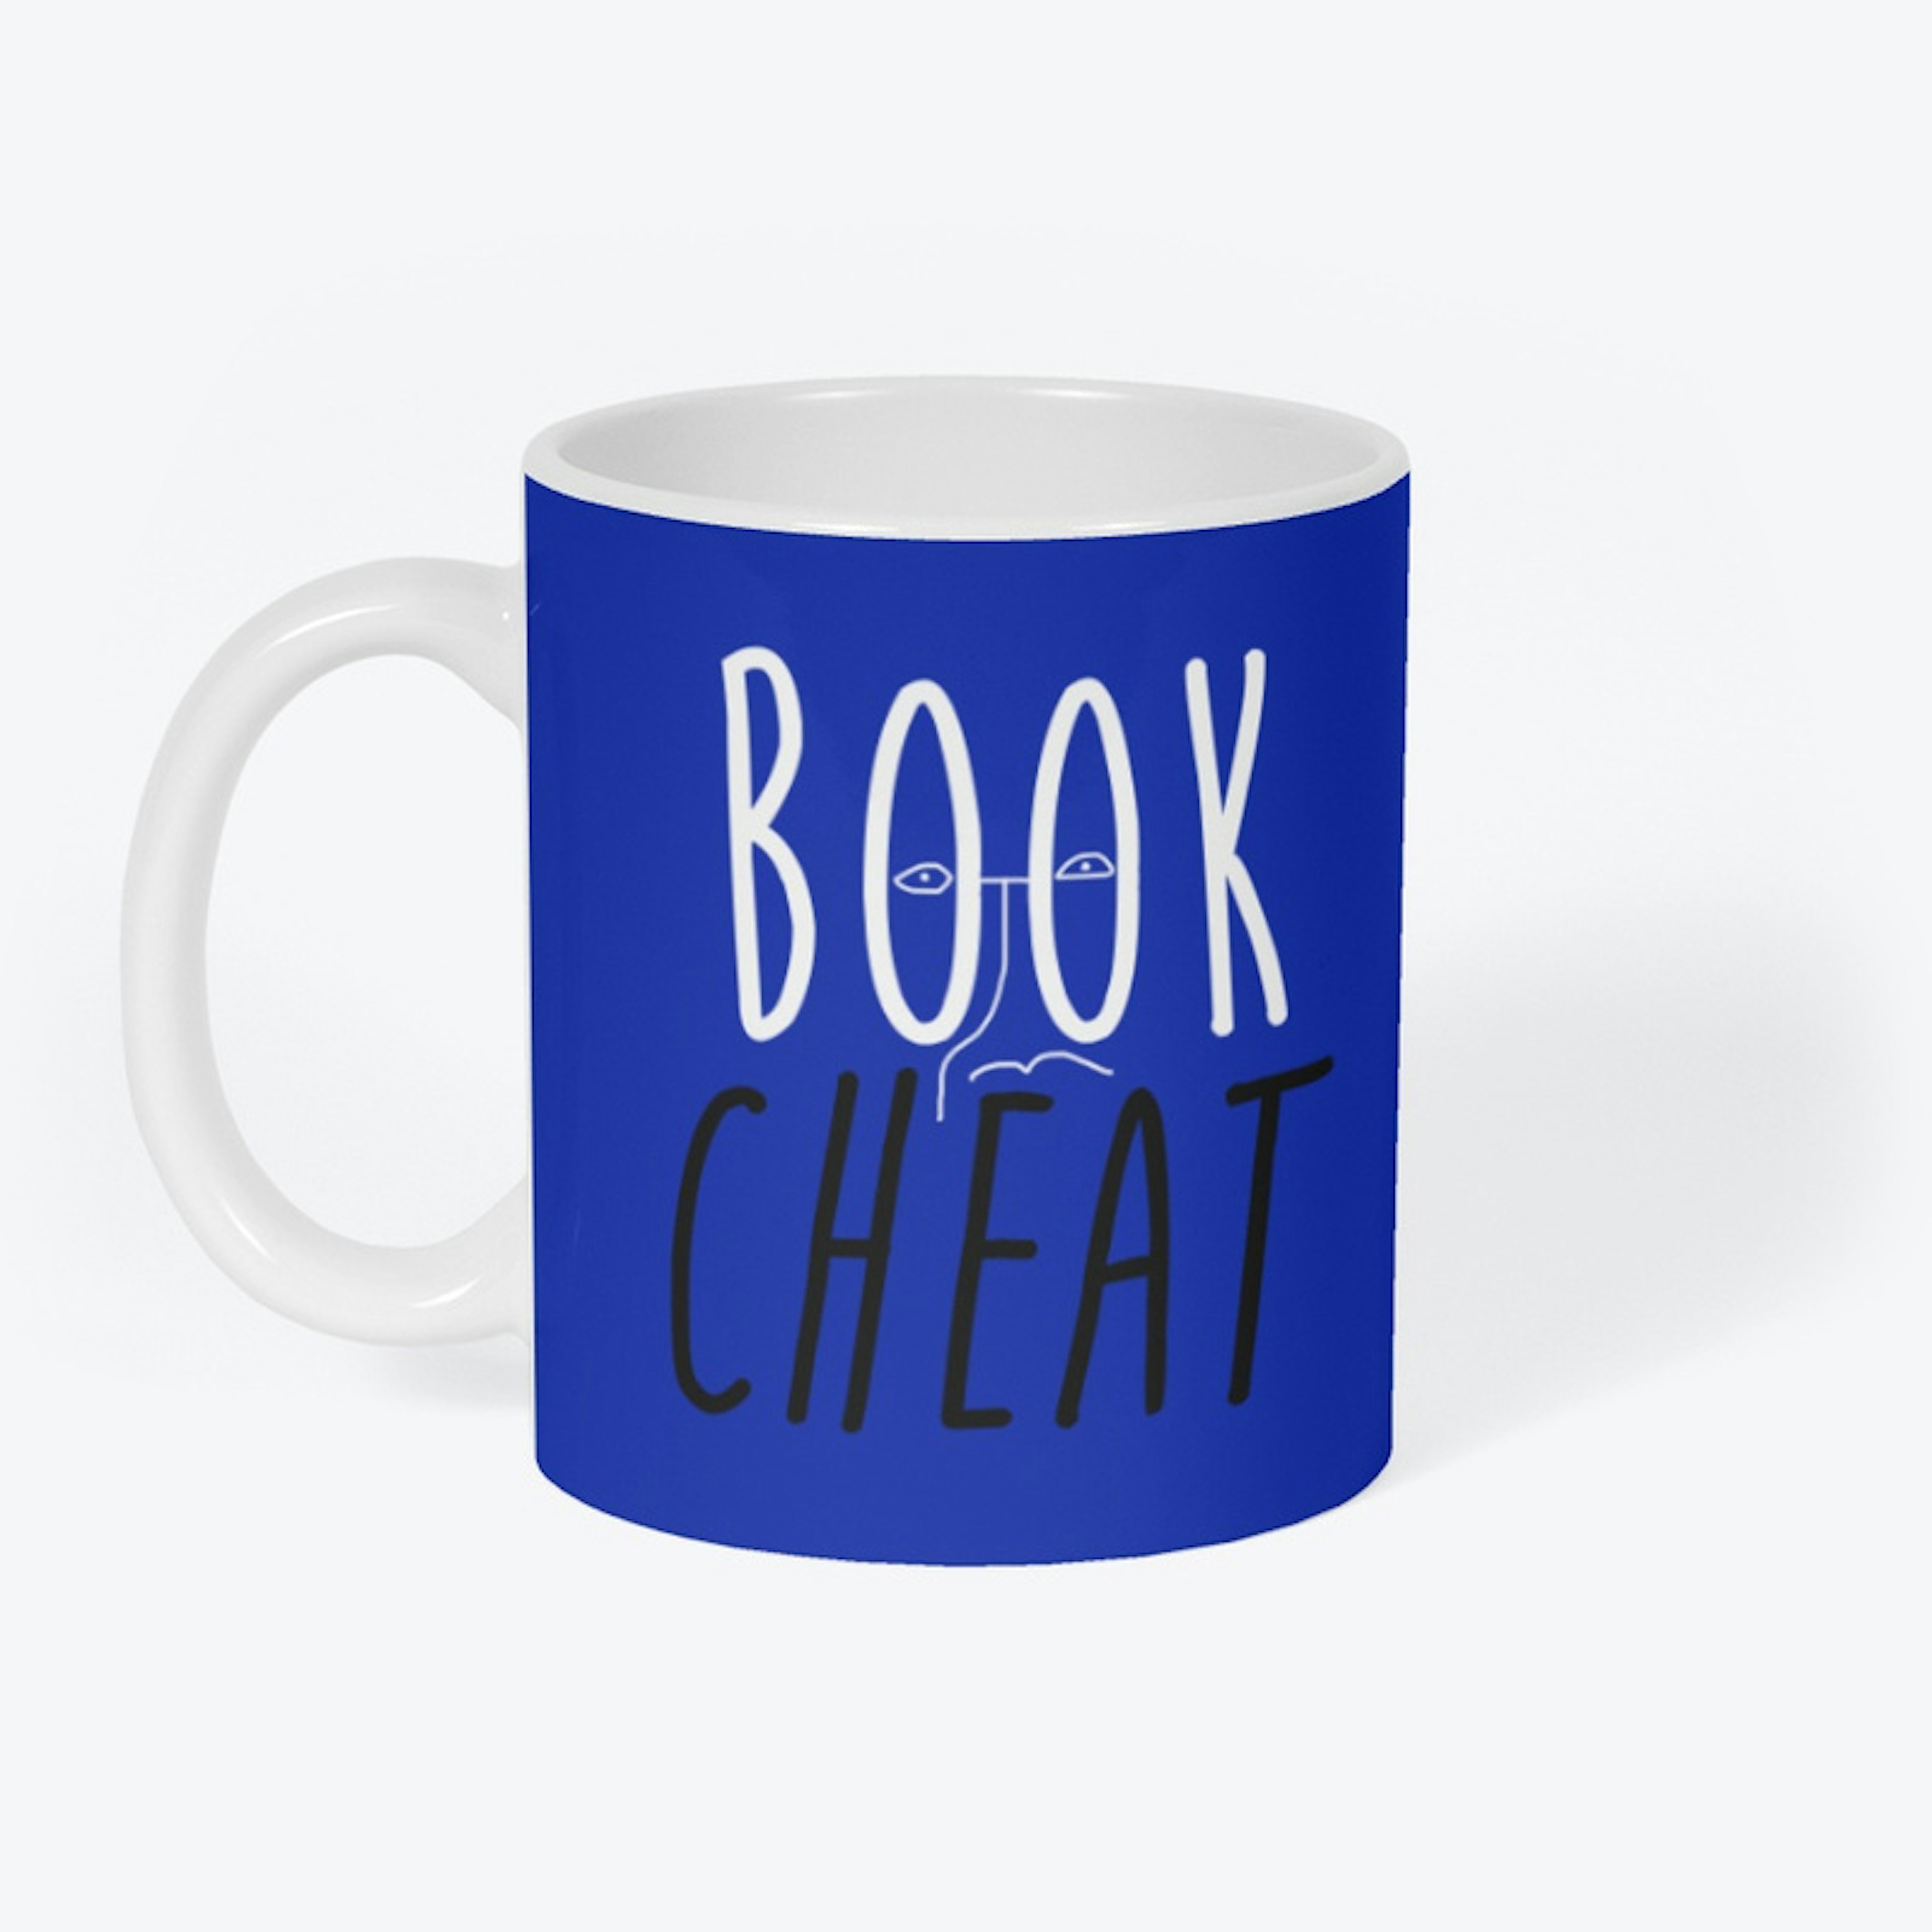 Book Cheat Mug